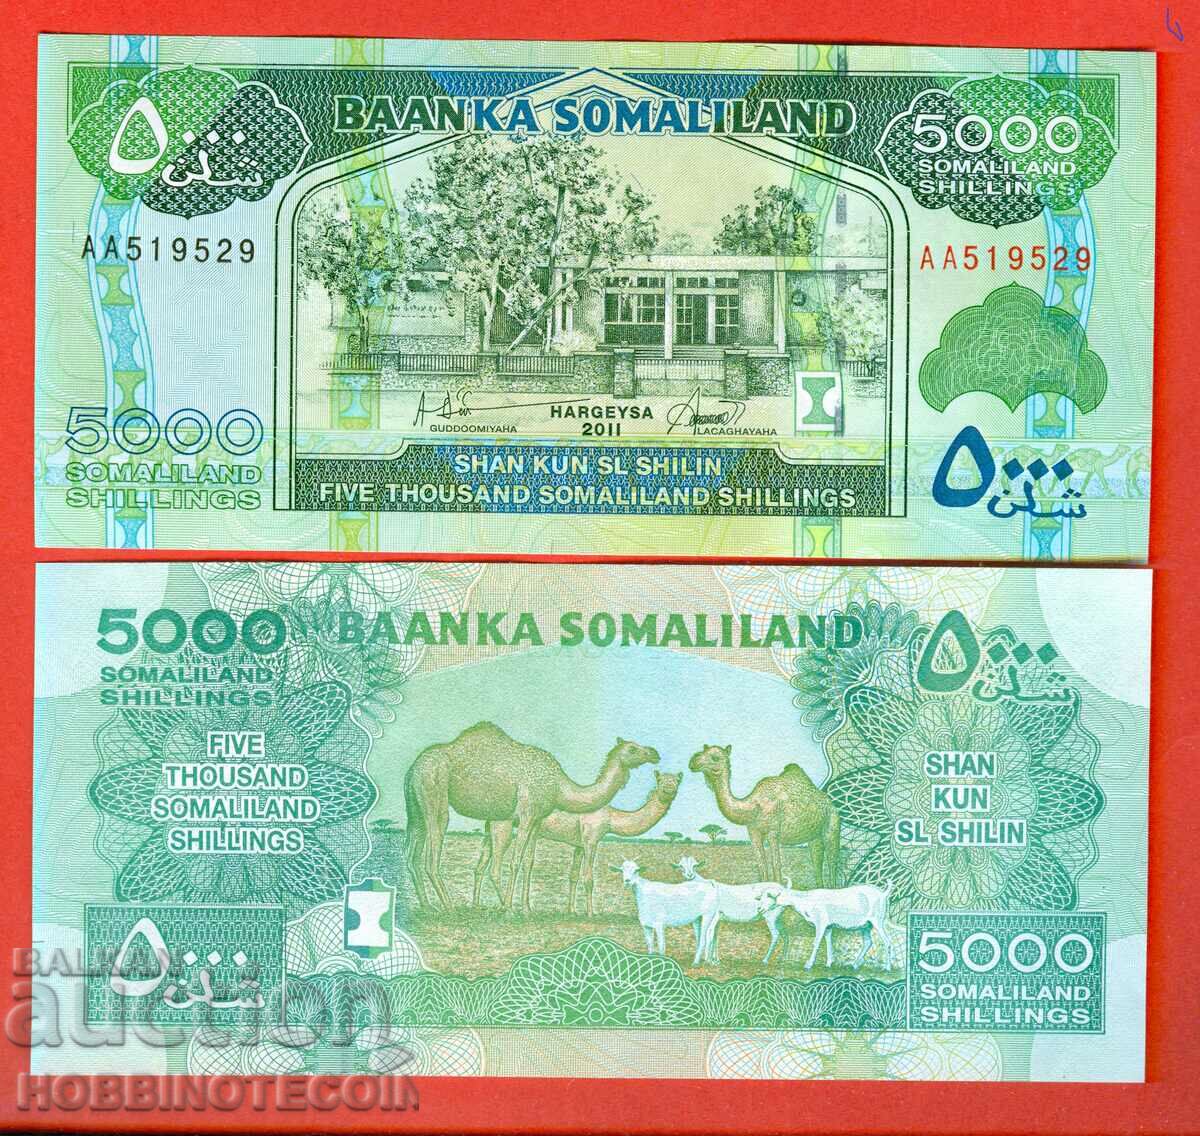 SOMALILAND SOMALILAND 5000 Shilling emisiune 2011 NOU UNC